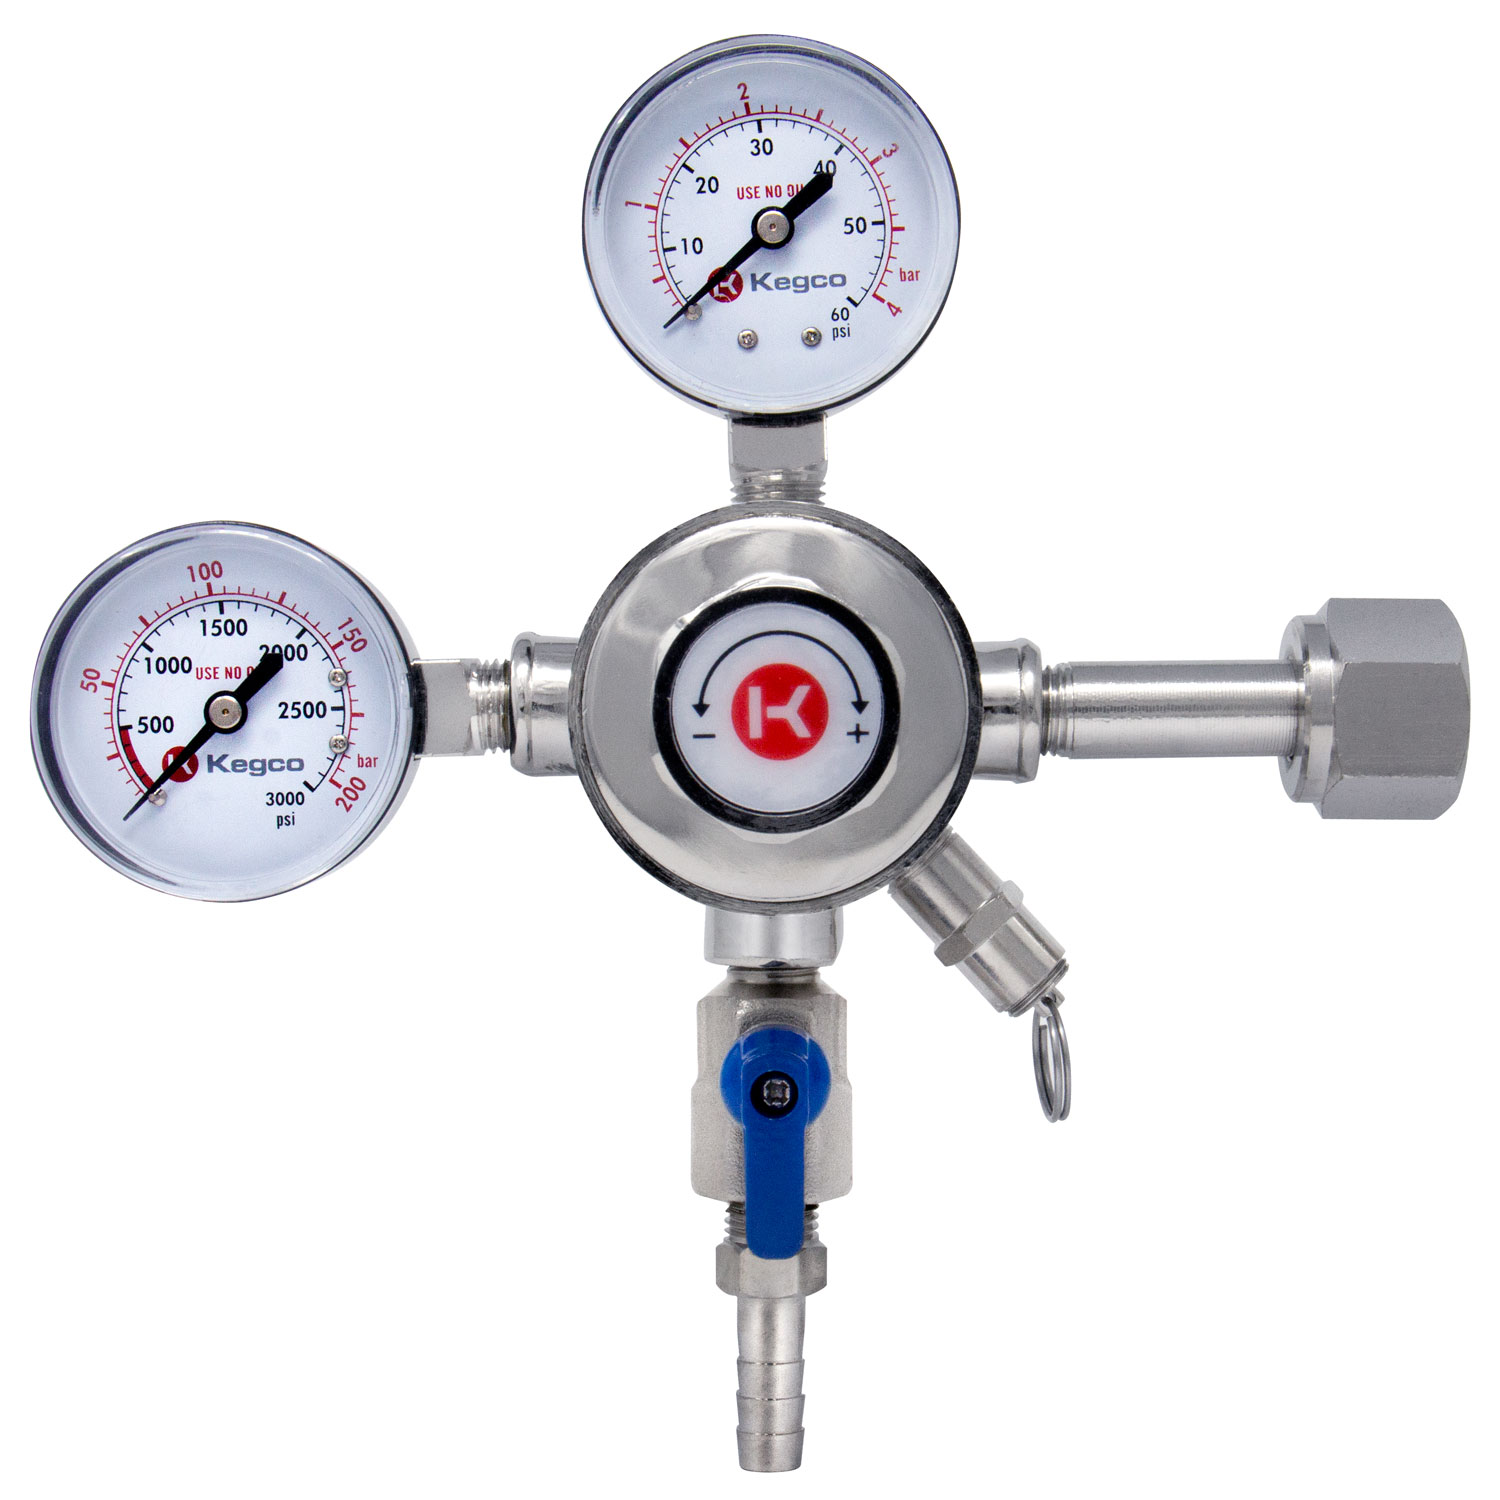 T Co2 Regulator Dual Gauge Pressure Relief Valve